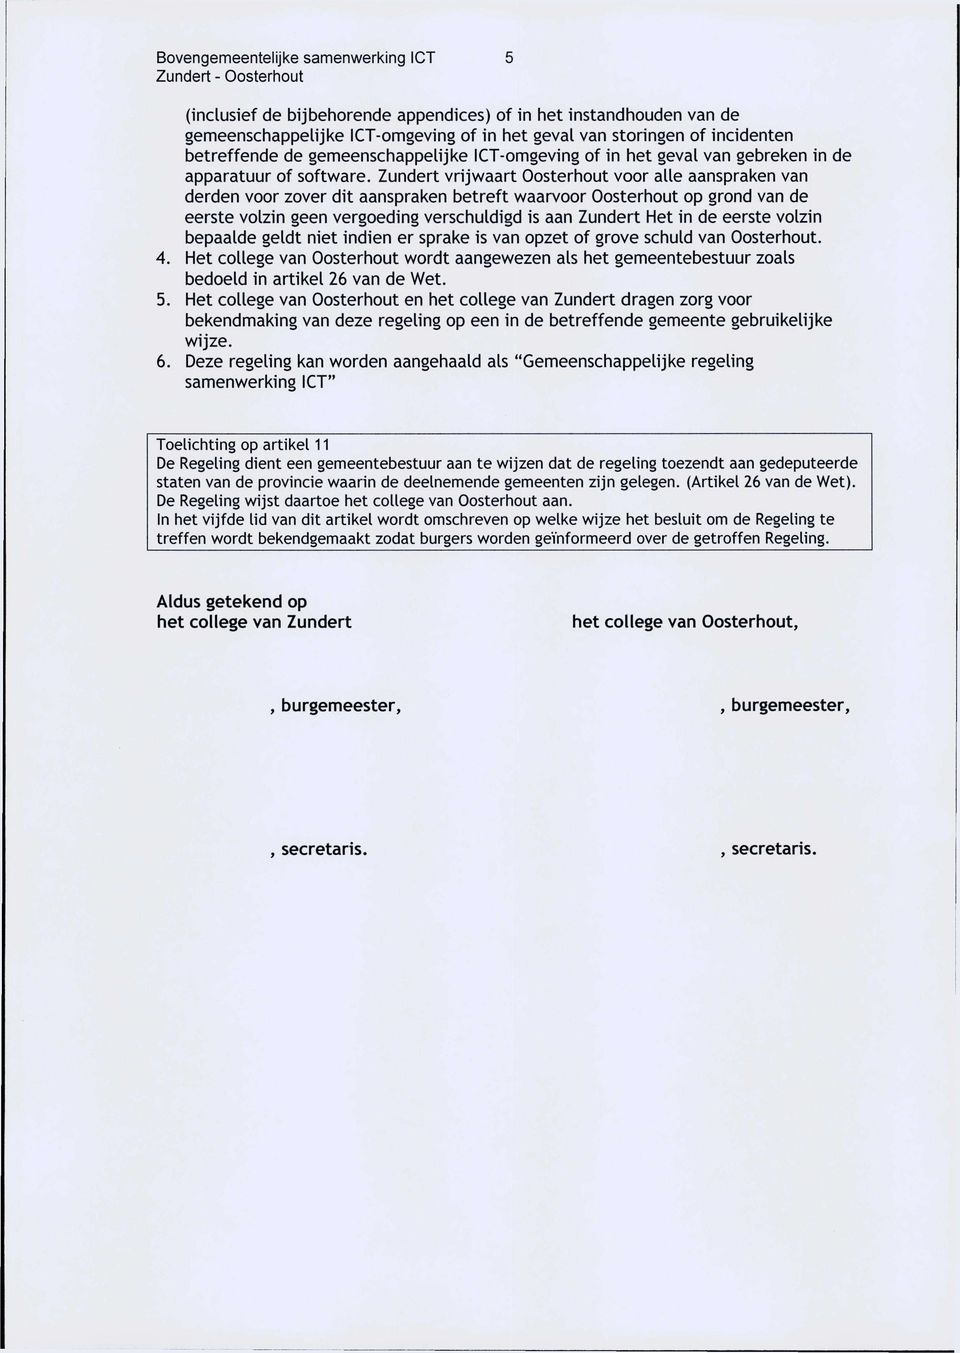 Zundert vrijwaart Oosterhout voor alle aanspraken van derden voor zover dit aanspraken betreft waarvoor Oosterhout op grond van de eerste volzin geen vergoeding verschuldigd is aan Zundert Het in de